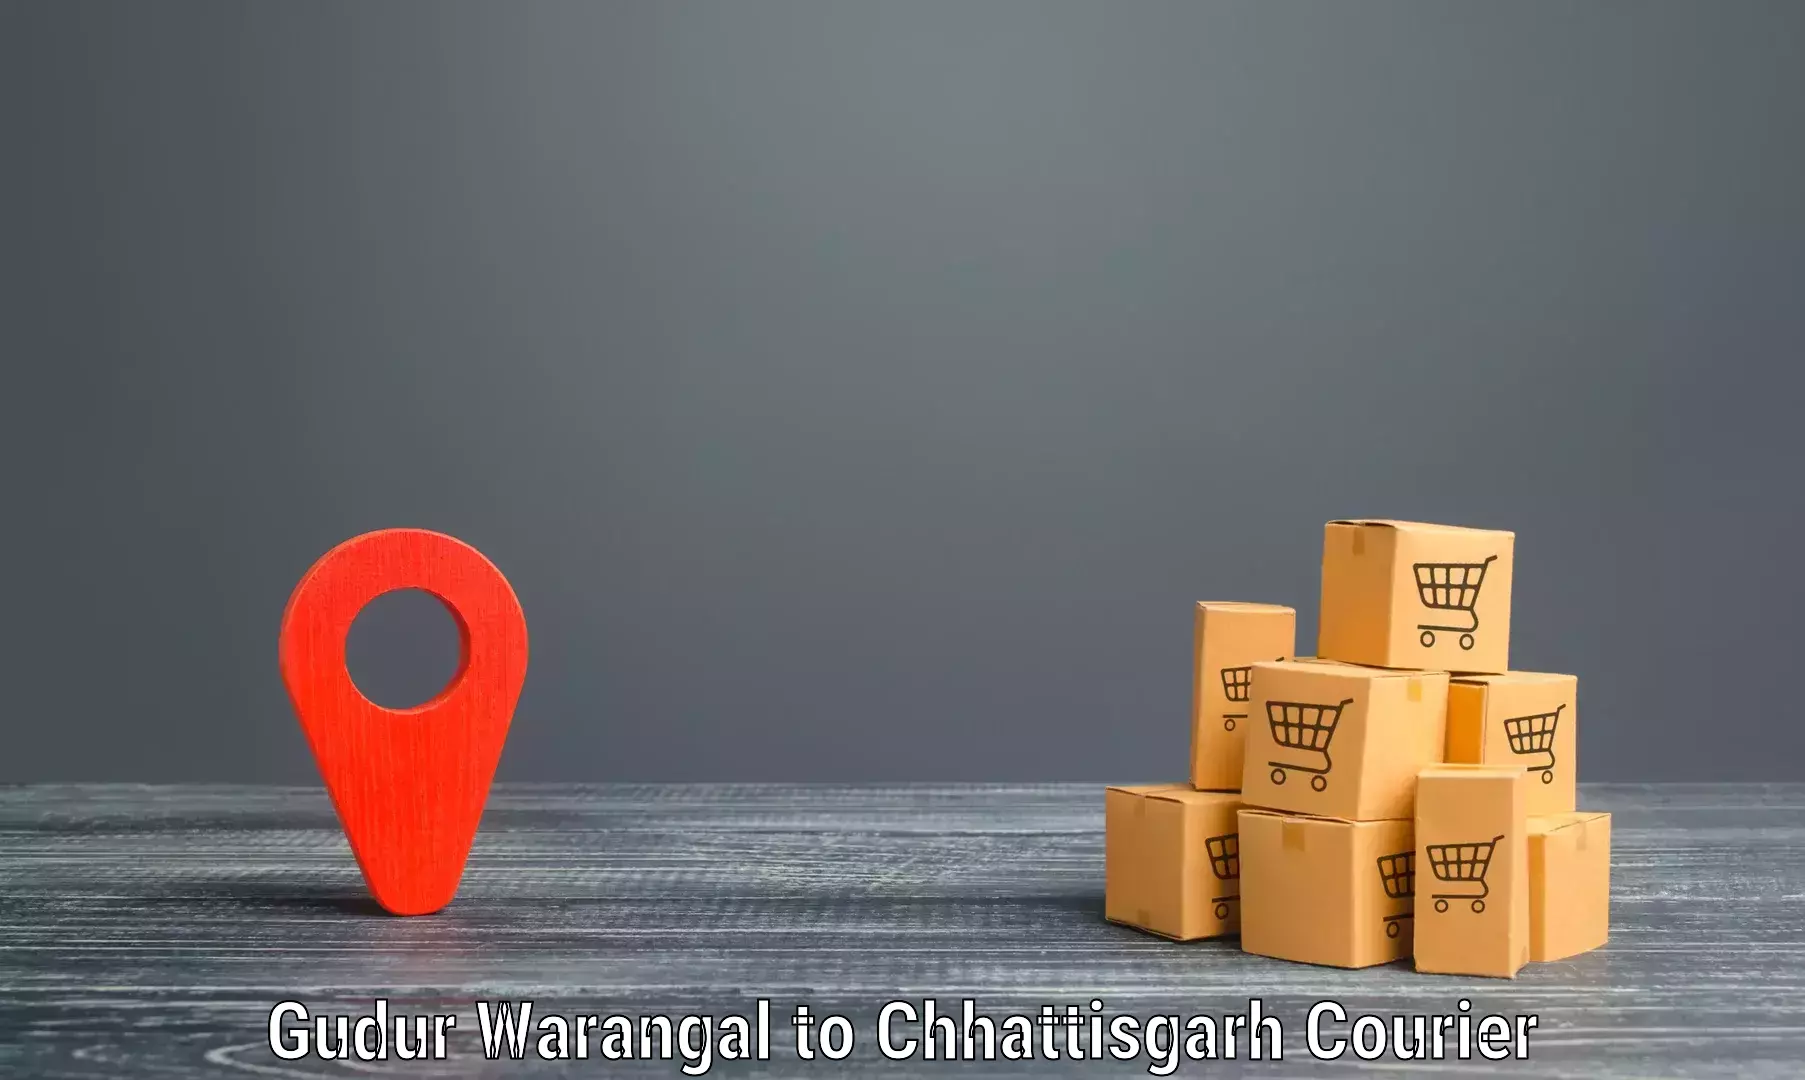 Pharmaceutical courier Gudur Warangal to Mahasamund